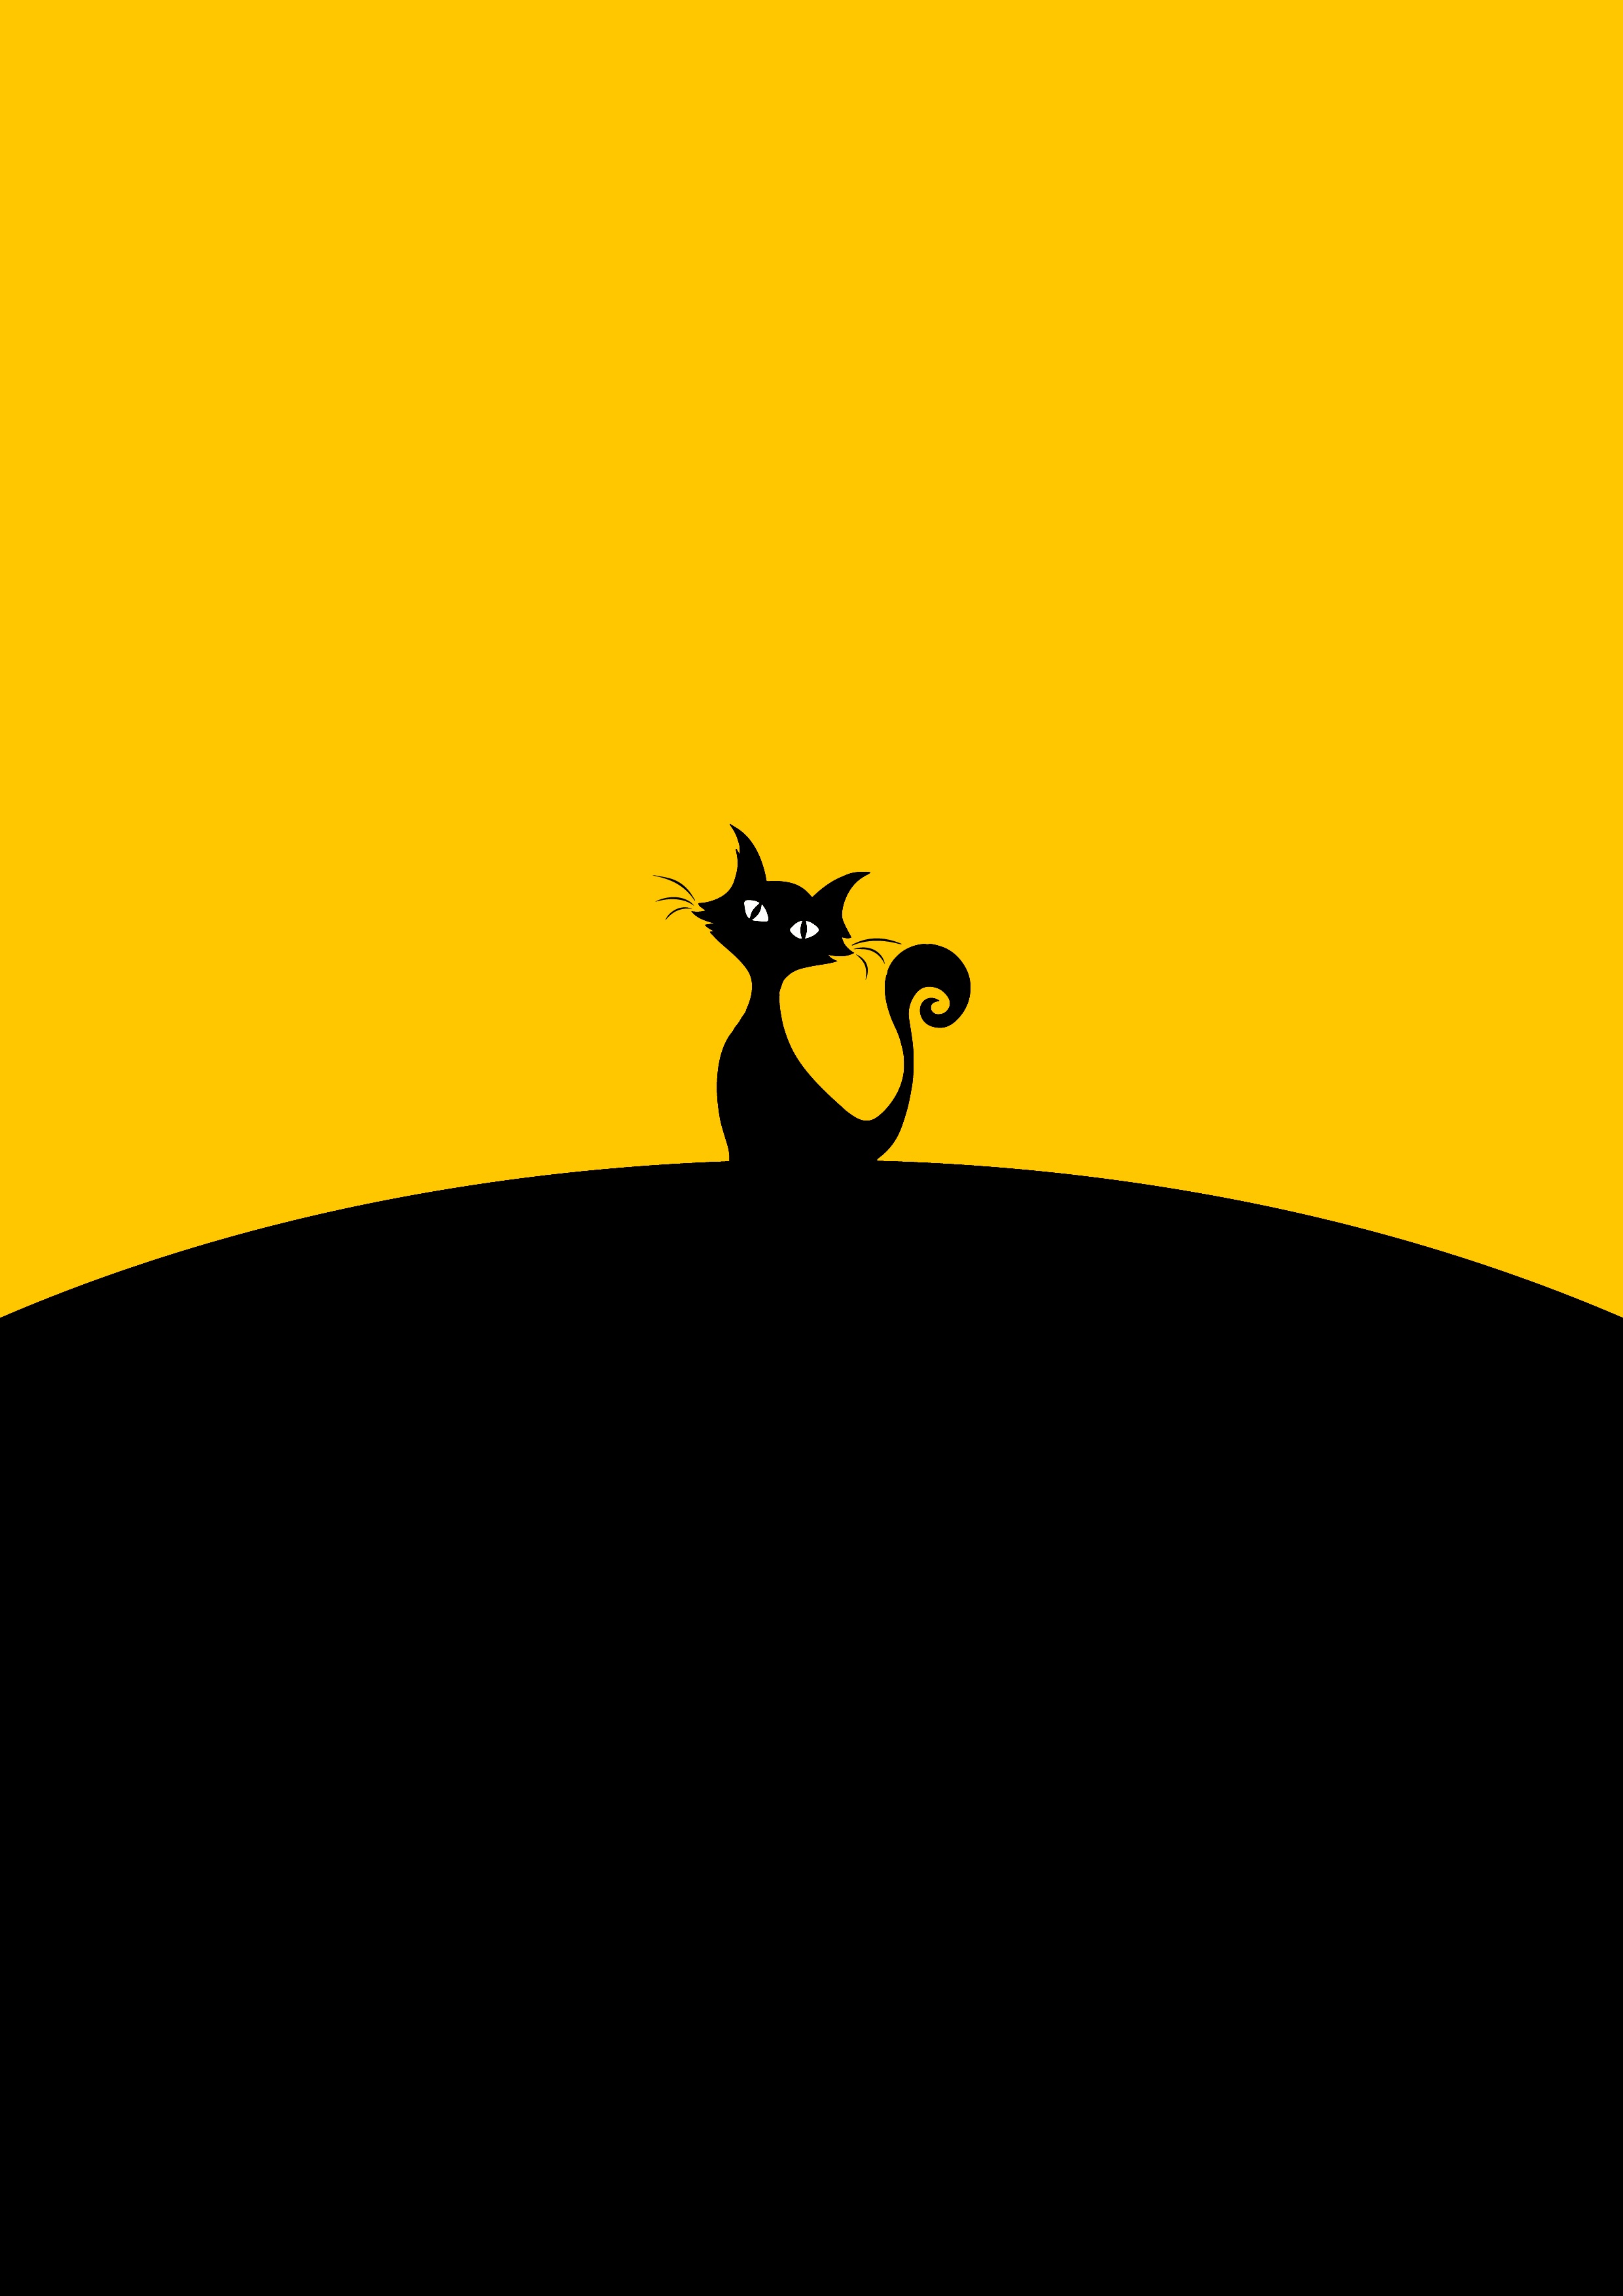 52299 免費下載壁紙 猫, 黑色, 黄色, 向量, 矢量, 轮廓, 剪影, 黑色的, 极简主义, 黄色的 屏保和圖片